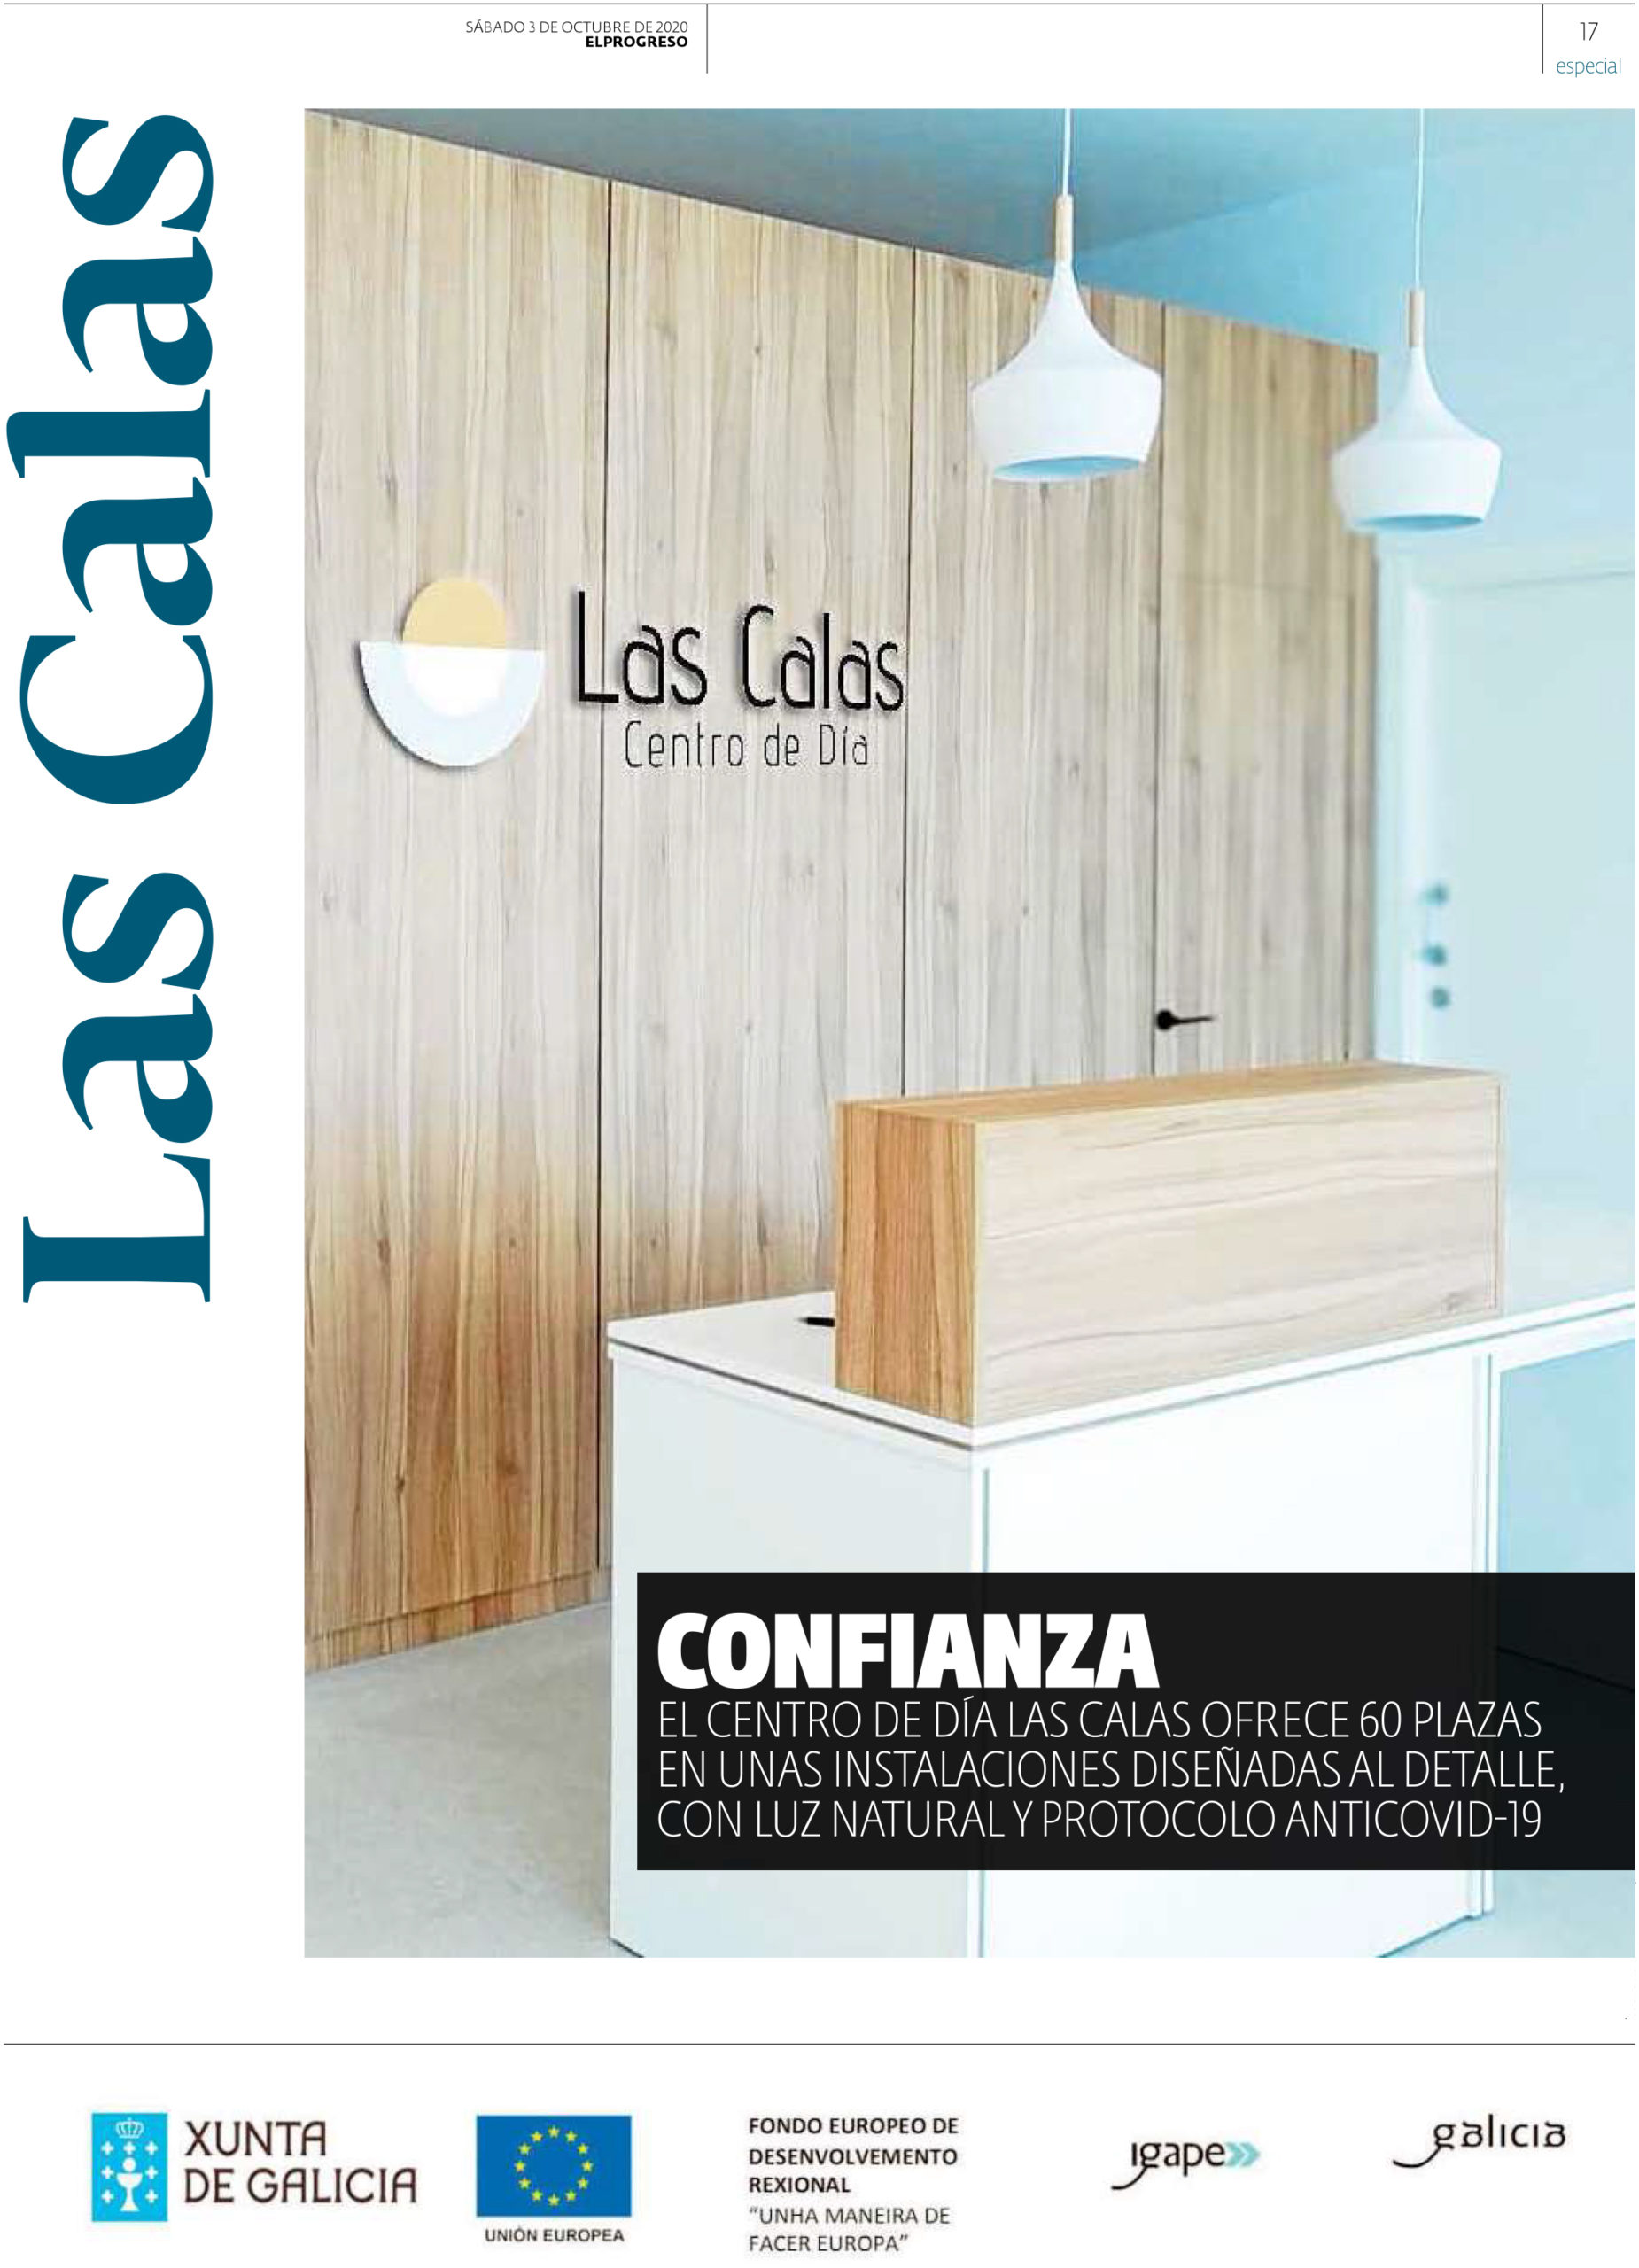 Las Calas nace como un centro de referencia en Lugo